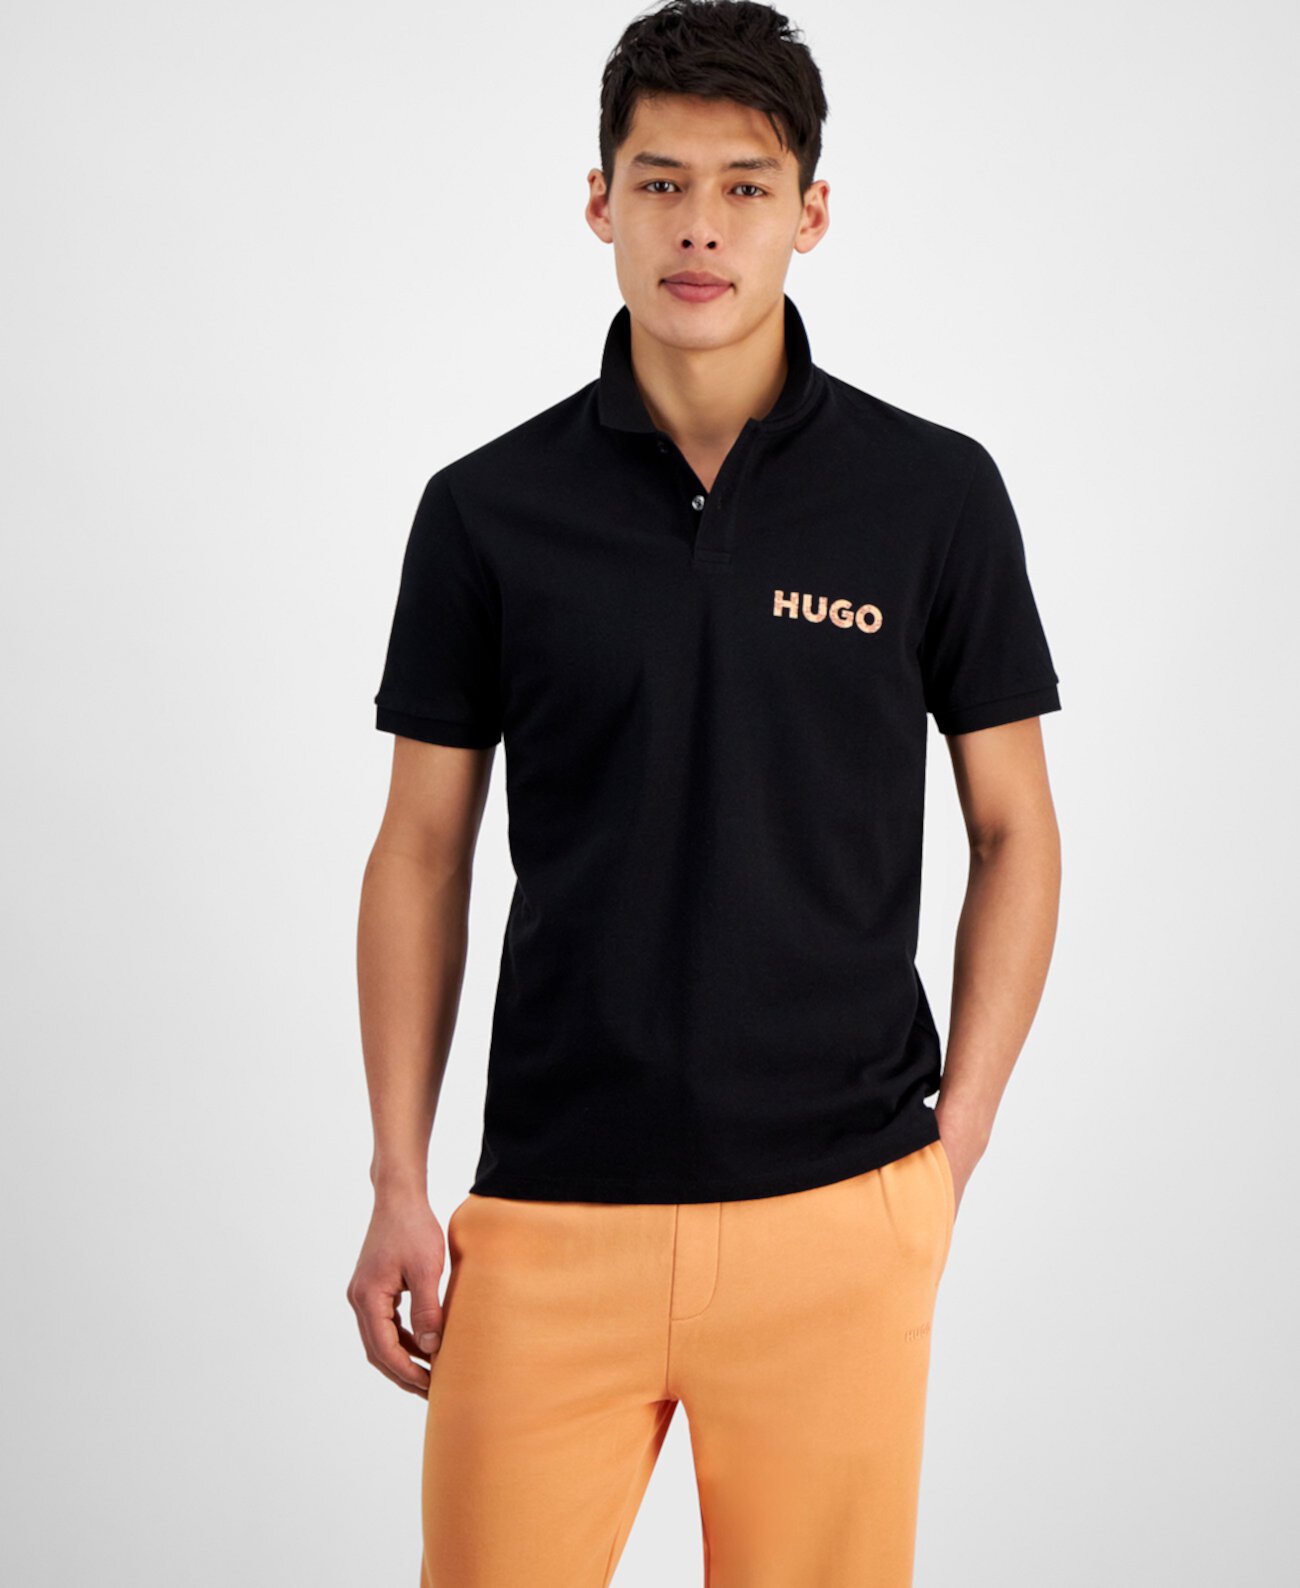 Мужская футболка-поло с логотипом HUGO BOSS HUGO BOSS